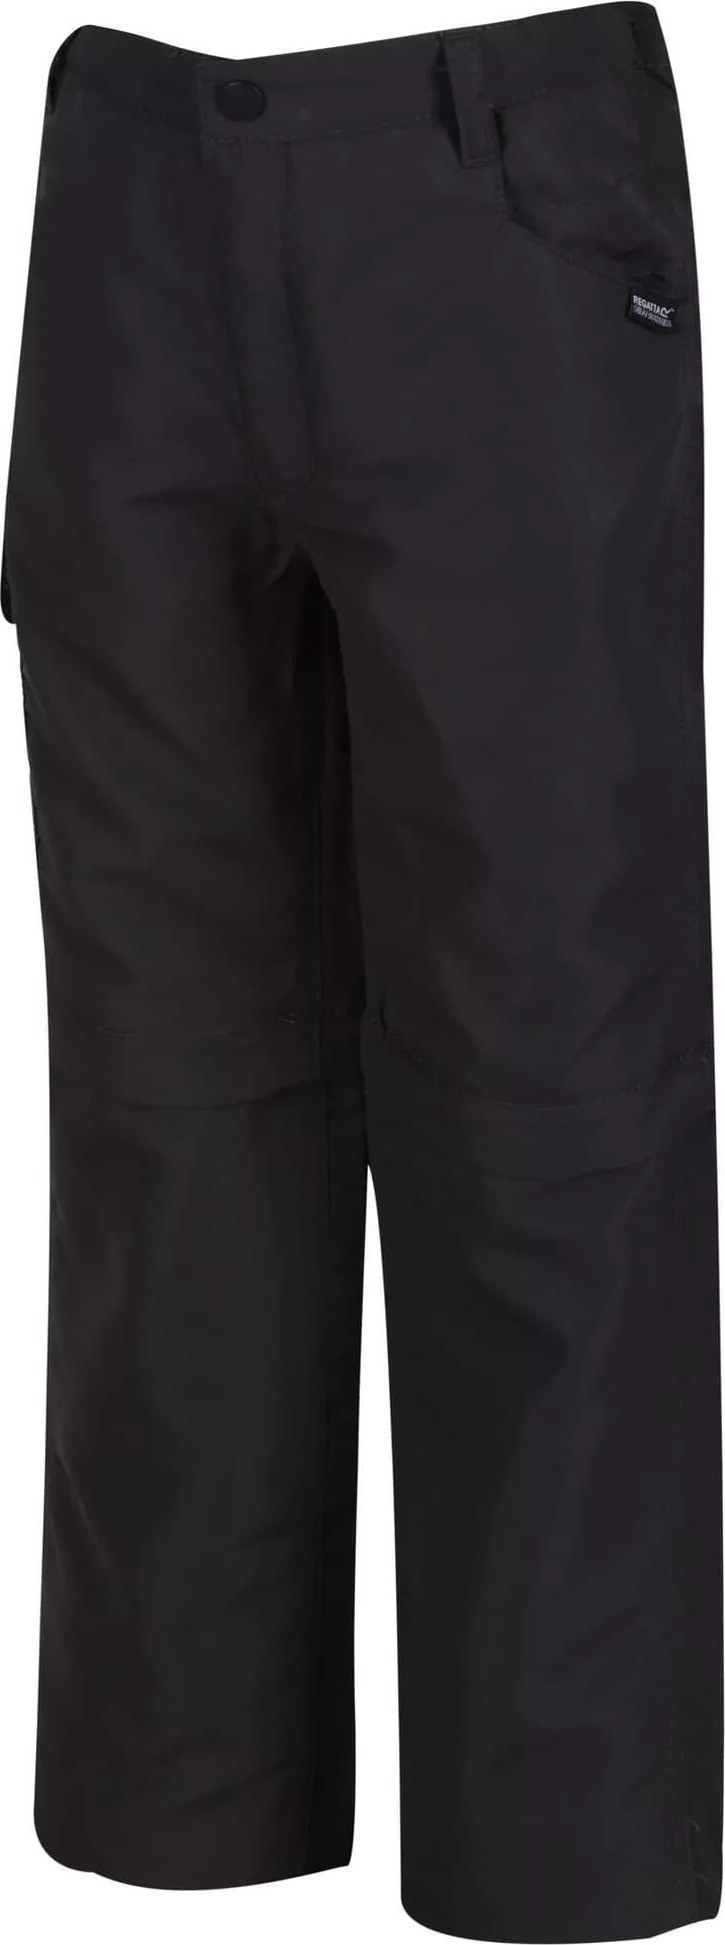 Dětské turistické kalhoty Regatta tmavě šedé 7-8 model 18685102